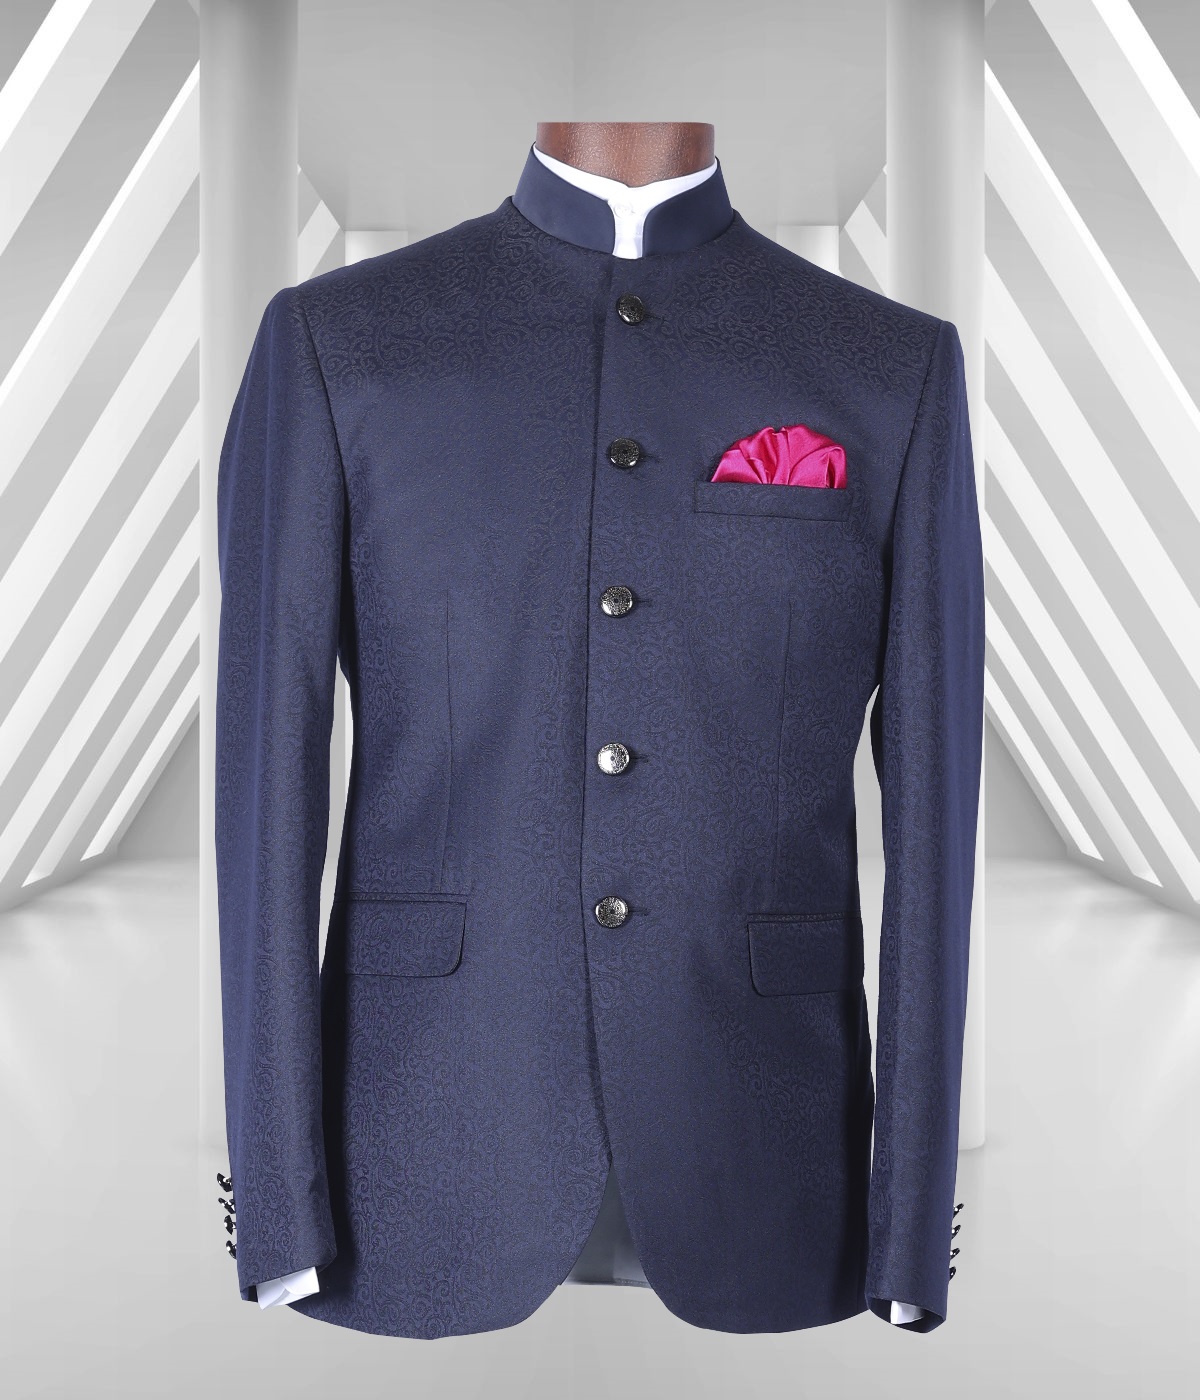 Suit Jacket Men Mens Sport Coats and S Suit for Gift Business Office Blue Color M, Men's, Size: Medium